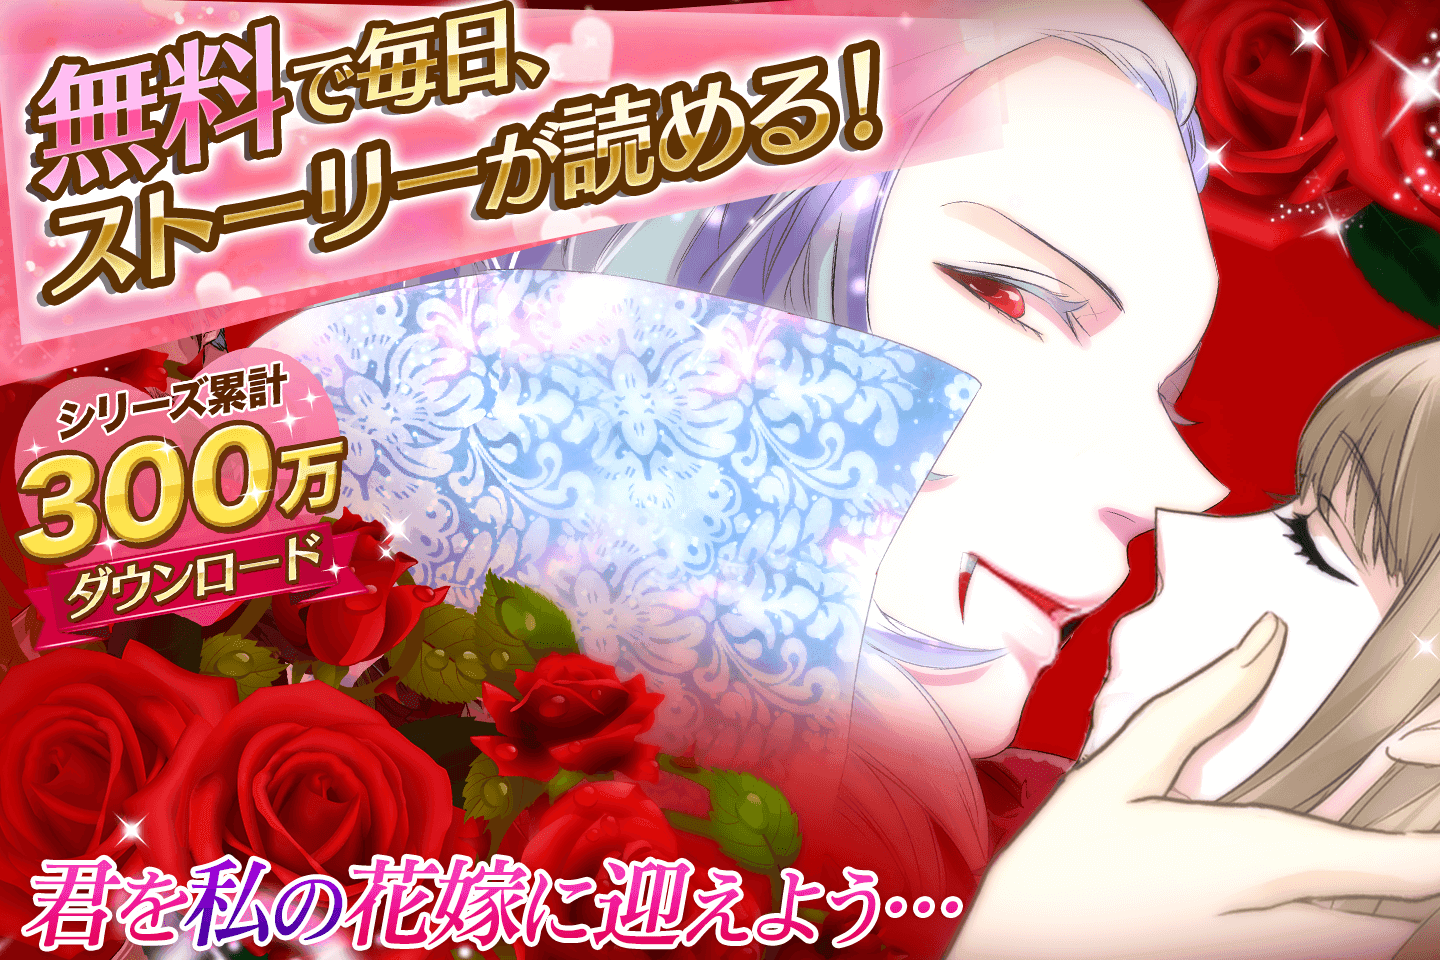 Screenshot 1 of Vampire Kiss Gioco romantico gratuito per donne! Popolare gioco Otome 1.6.1